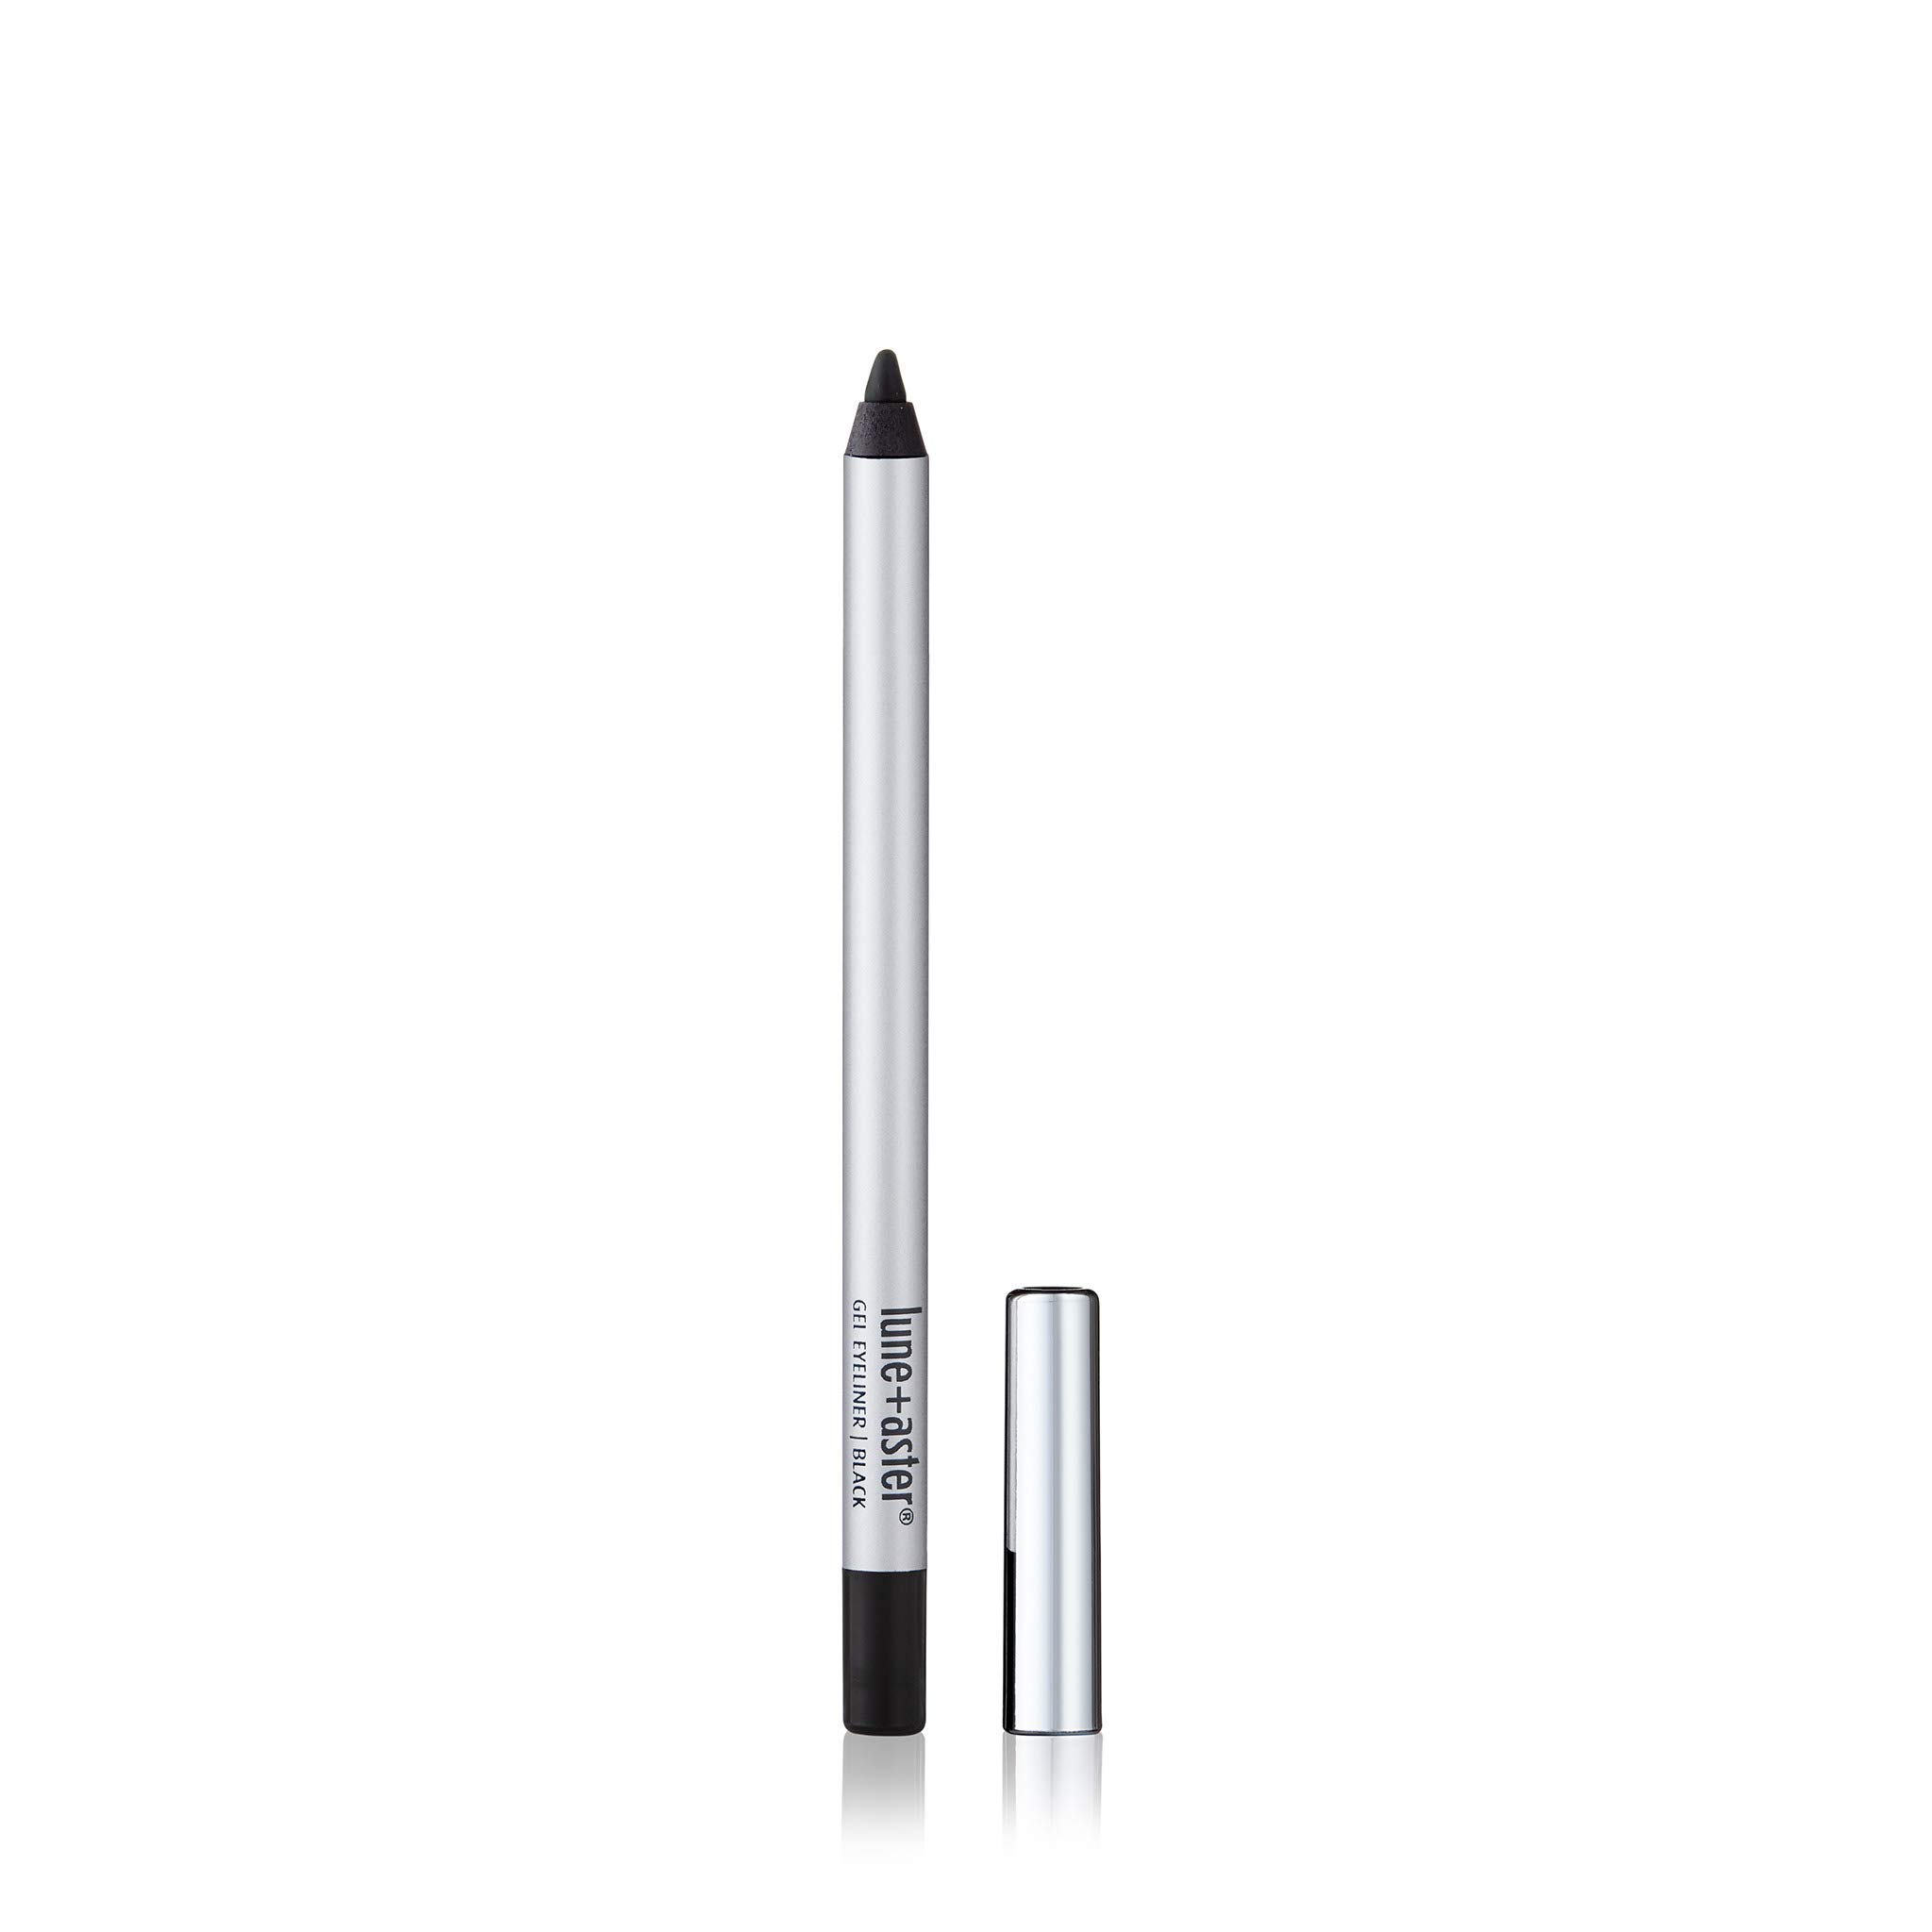 Lune+Aster Dawn to Dusk Gel Eyeliner- Black- Longwear, easy to apply gel eyeliner pencil